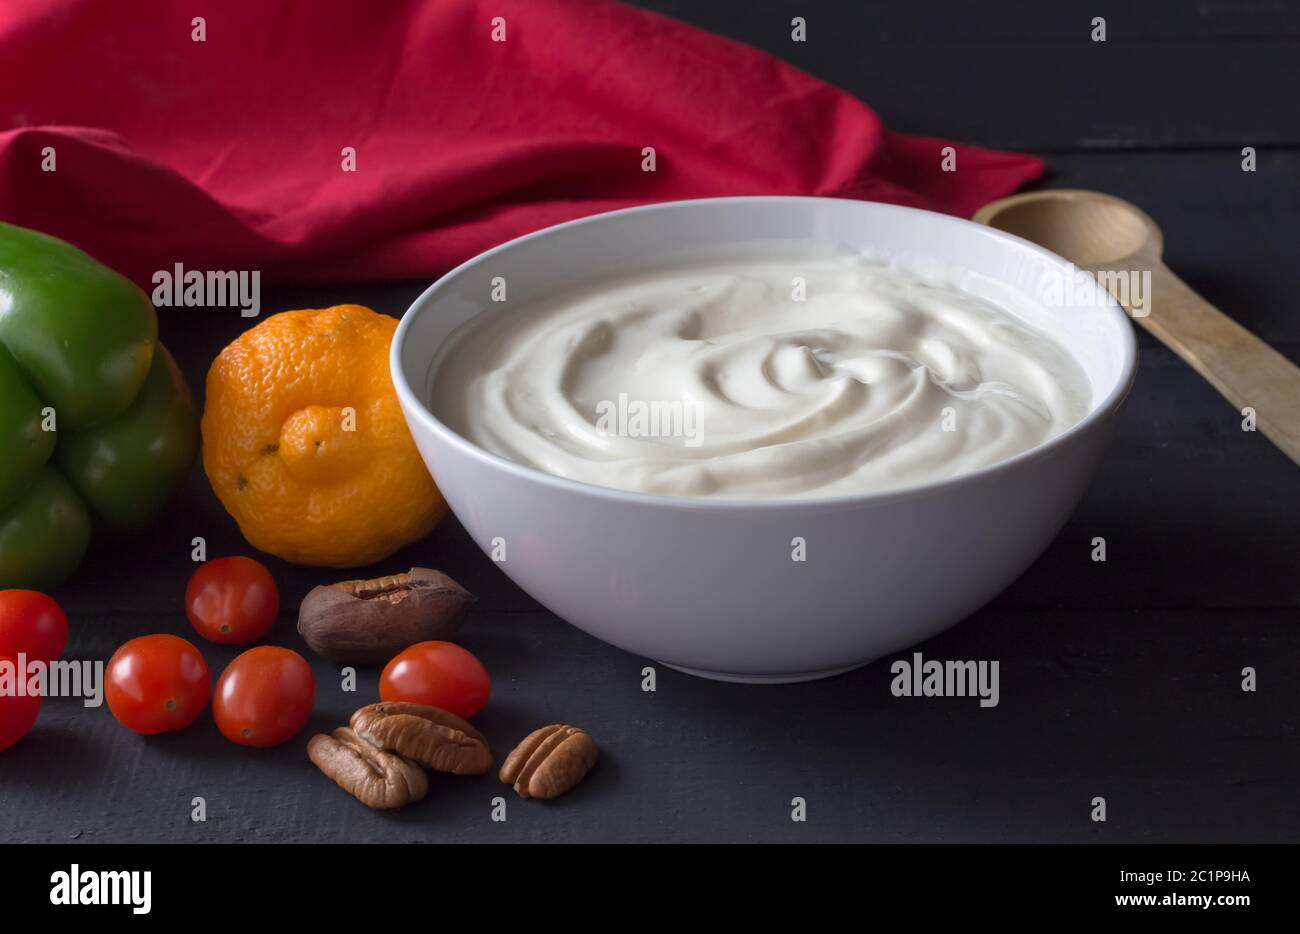 Joghurt in einer Schüssel - natürliches griechisches Joghurt Stillleben mit Gemüse und Nüssen auf schwarzem Hintergrund Stockfoto